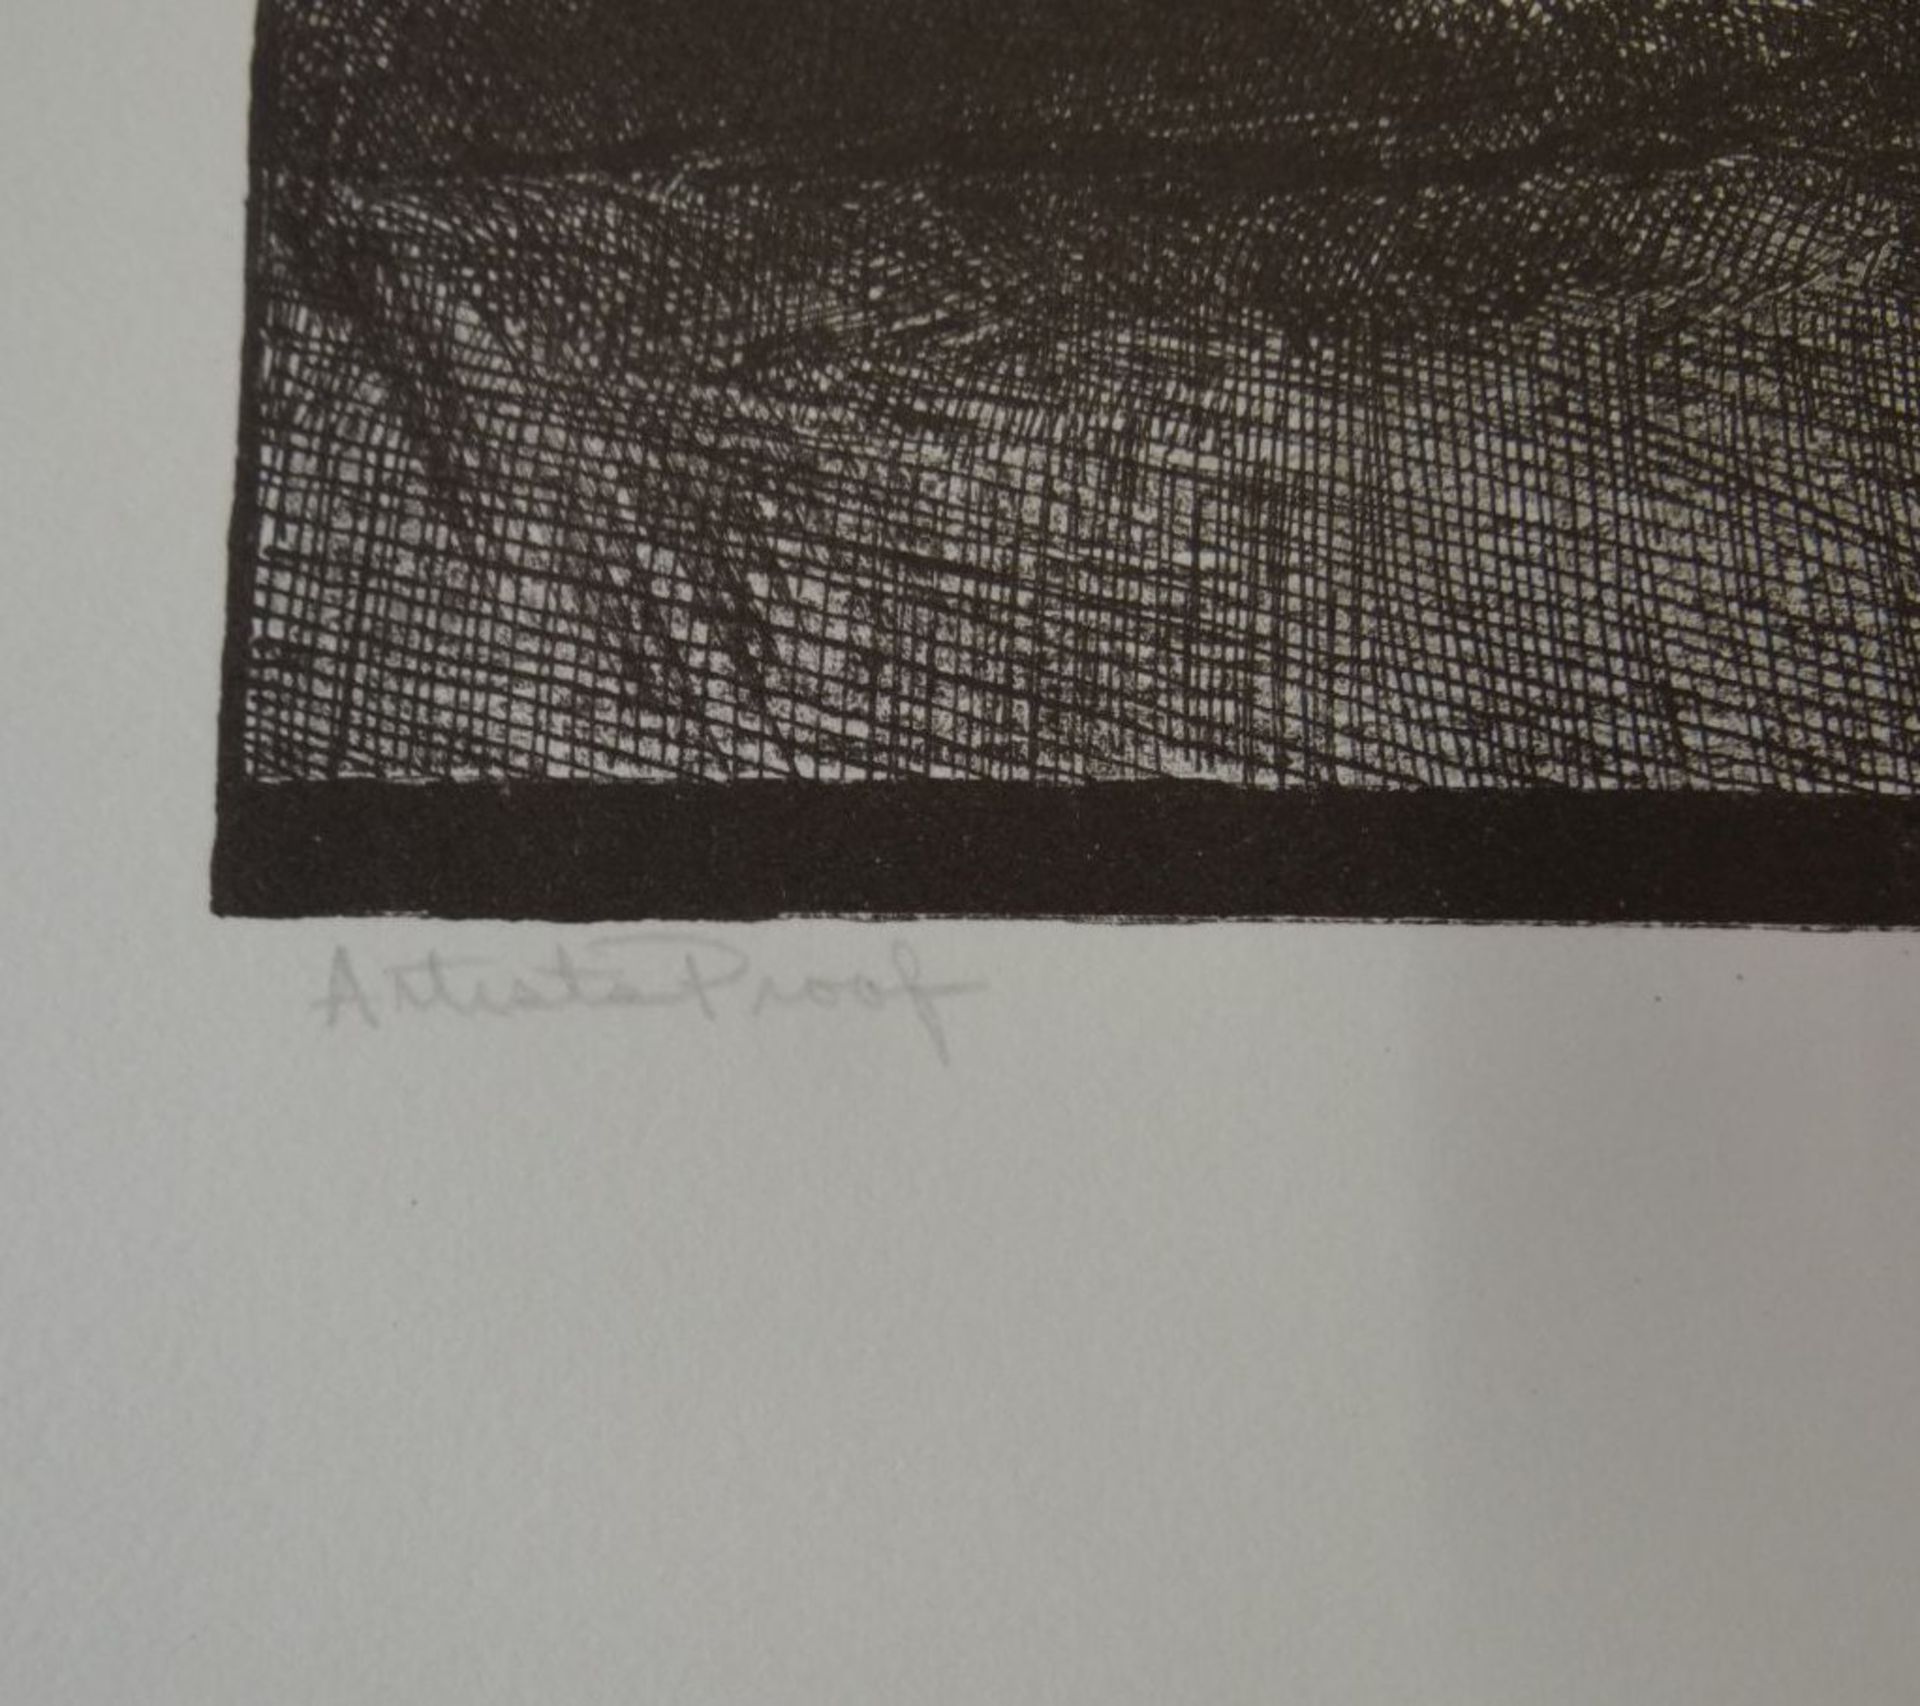 Thom. O'Connor, 1970 "Landschaft" Lithografie E.A proof, BG 55x45 cm - Image 3 of 4